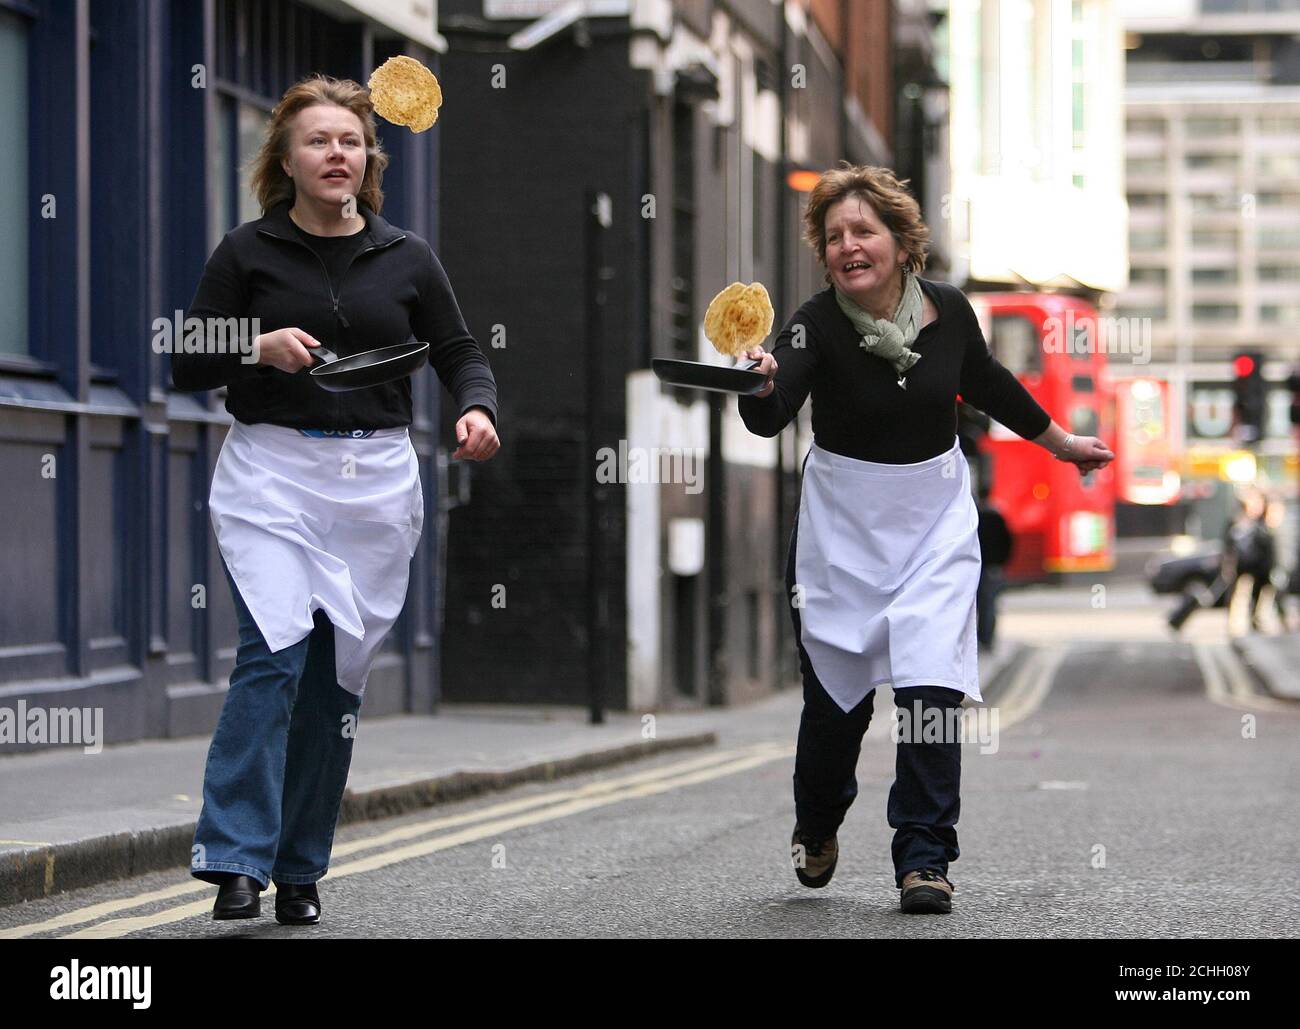 Las consultoras de alimentos Helen Woods (derecha) y Maureen Porteous demuestran sus habilidades de pancake volteando en Soho Square, Londres antes del martes de Shrove, el 5 de febrero. Foto de stock